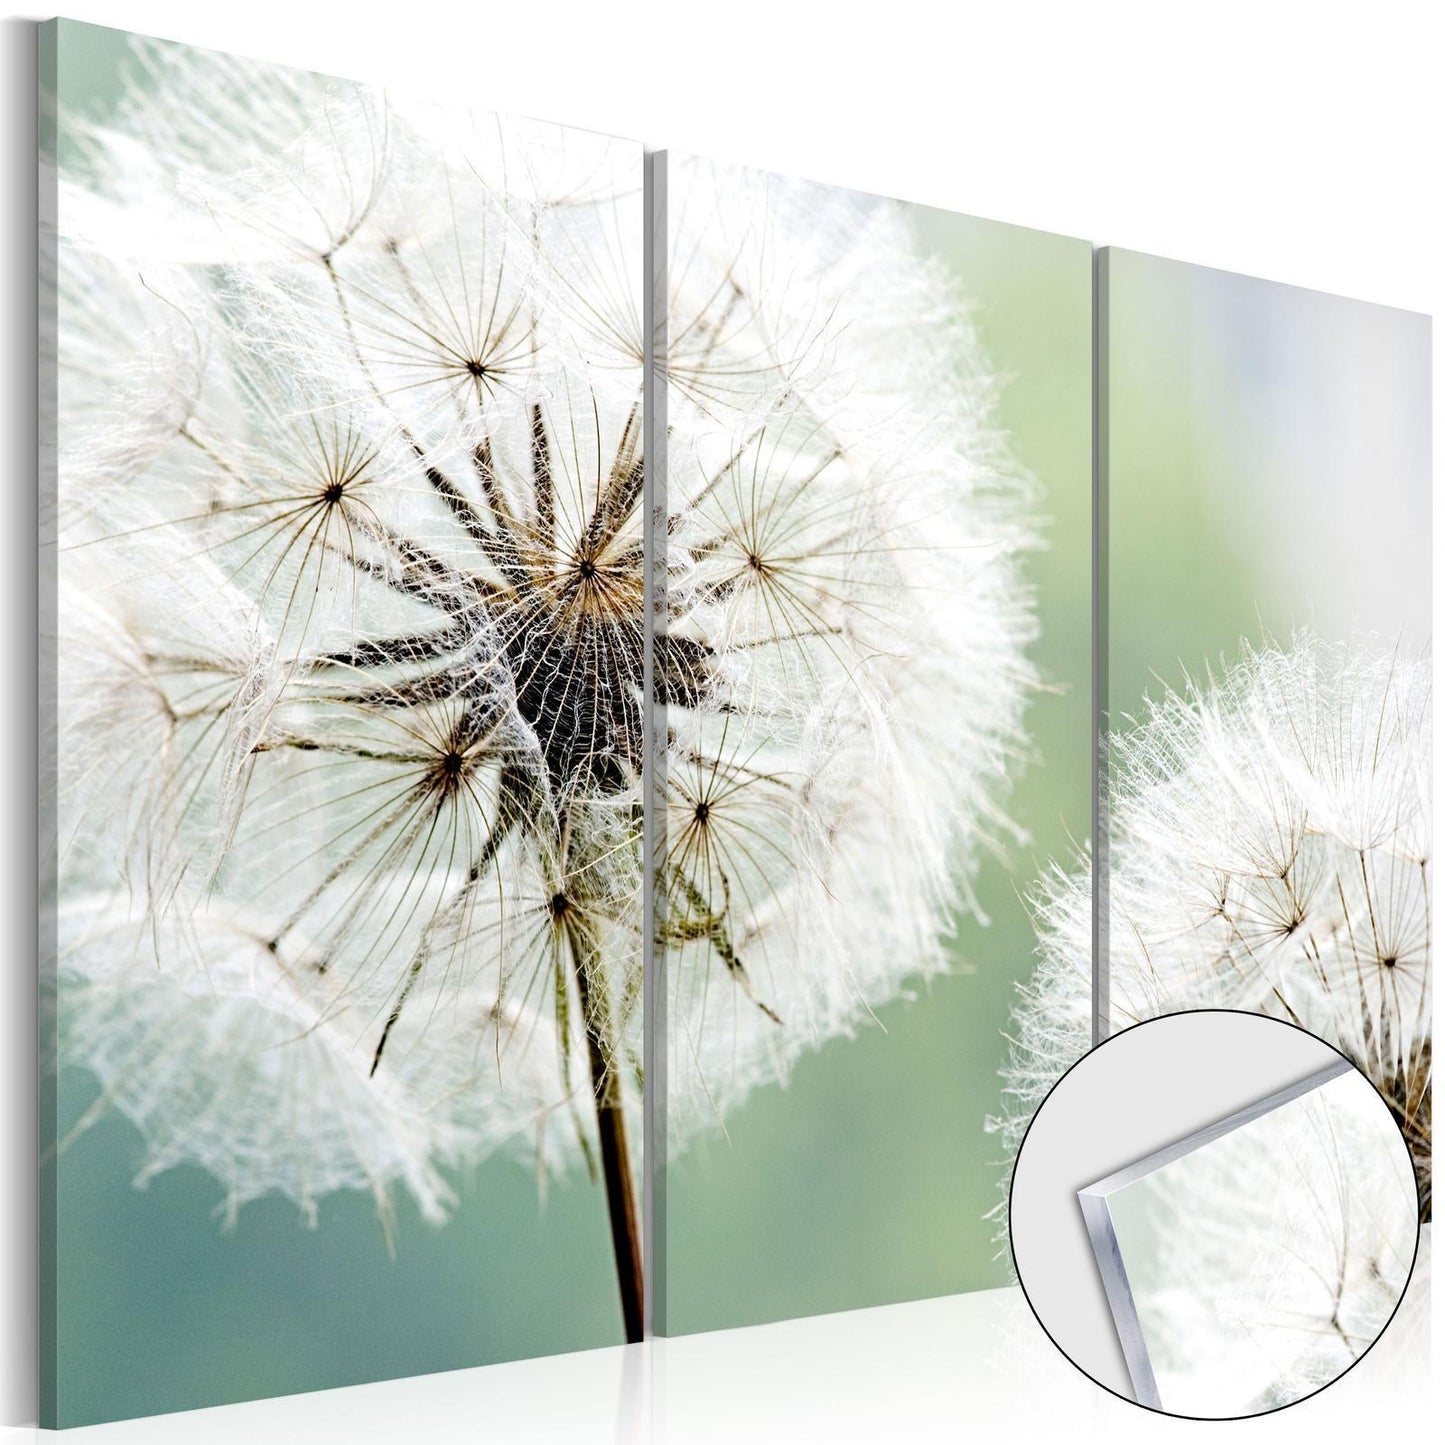 Afbeelding op acrylglas - Fluffy Dandelions